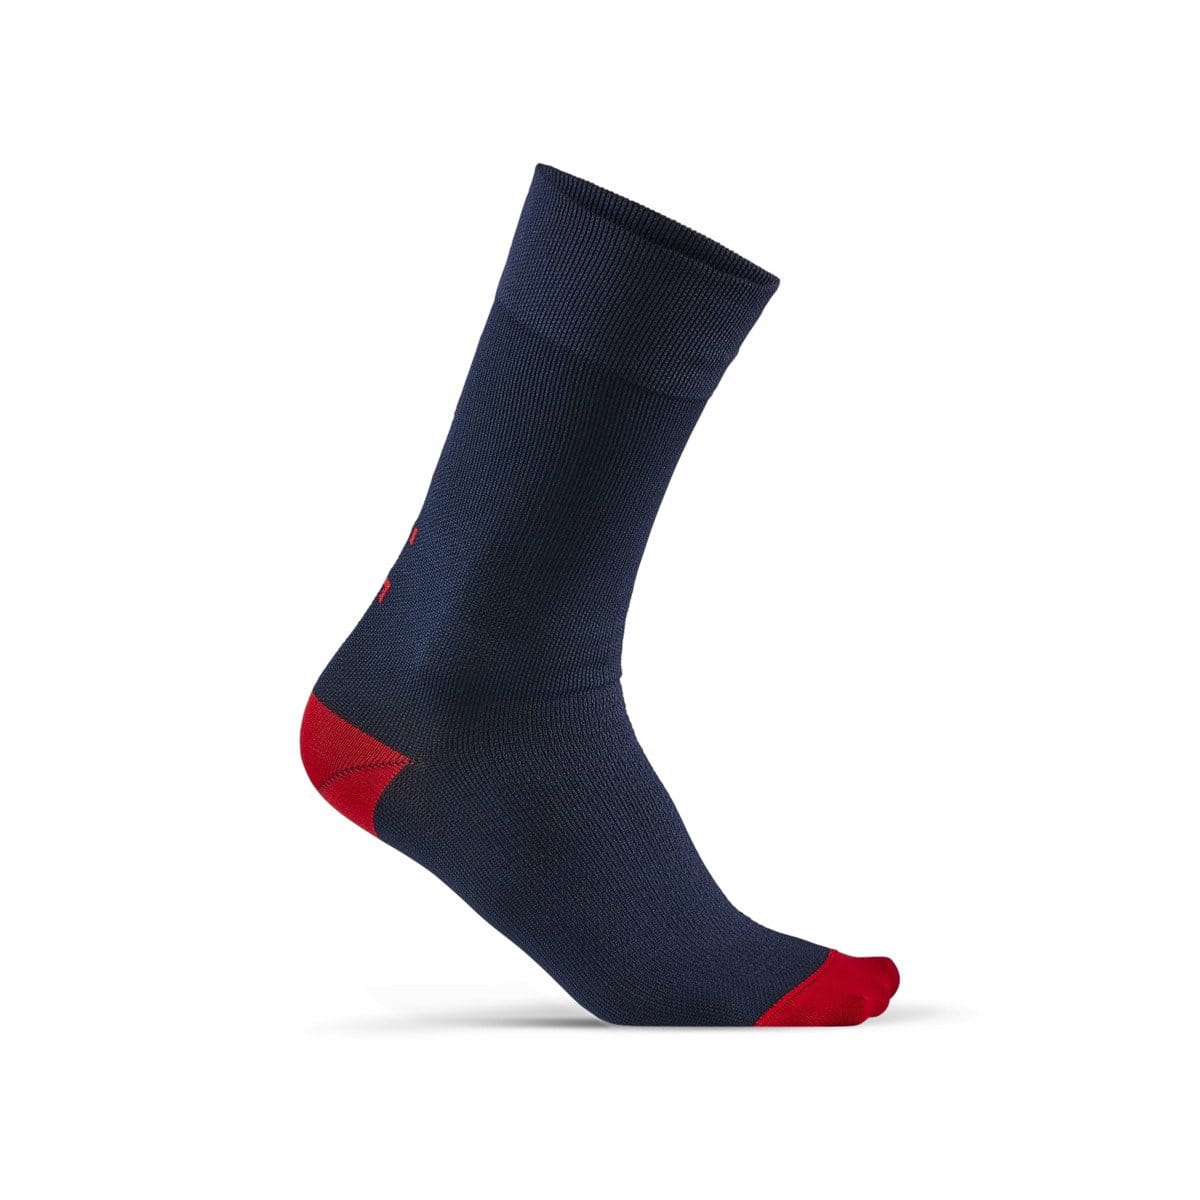 Unisex sporotvní ponožky Craft Ponožky Training Pack tmavě modrá s červenou